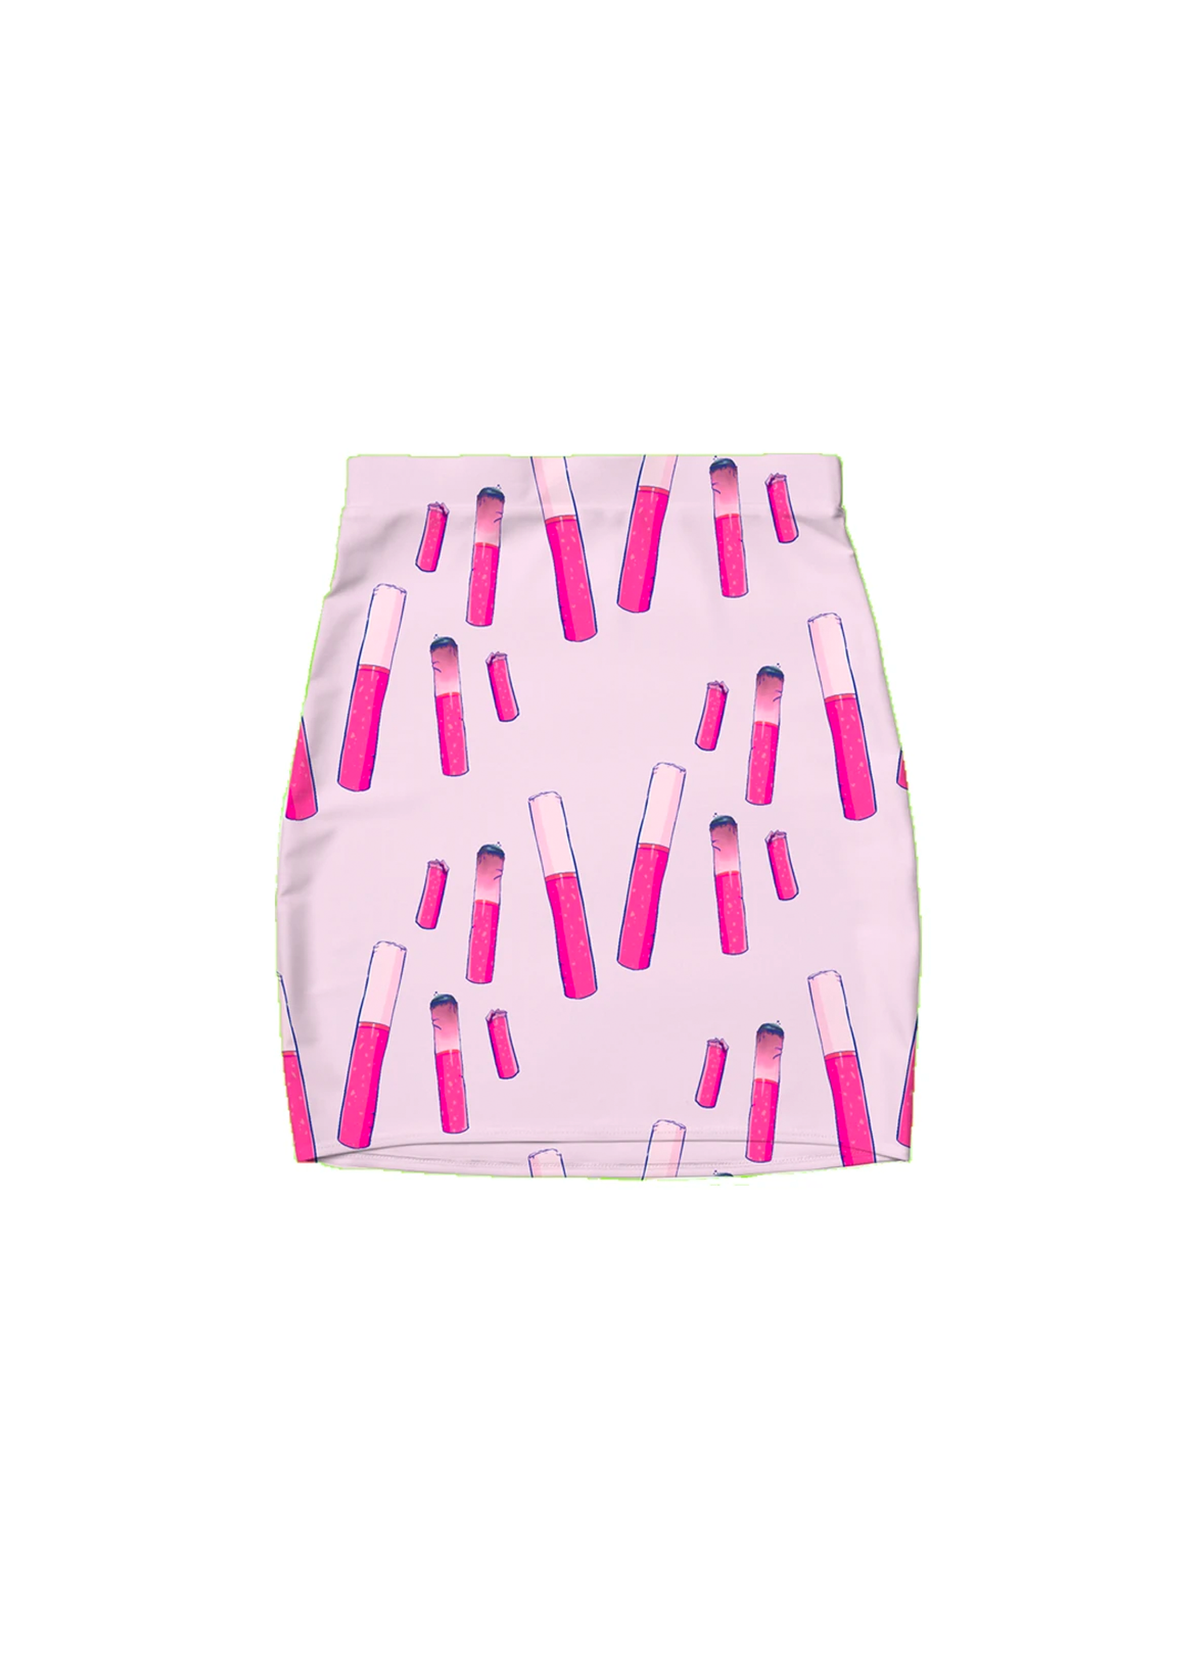 2XL lipstick ashtray skirt